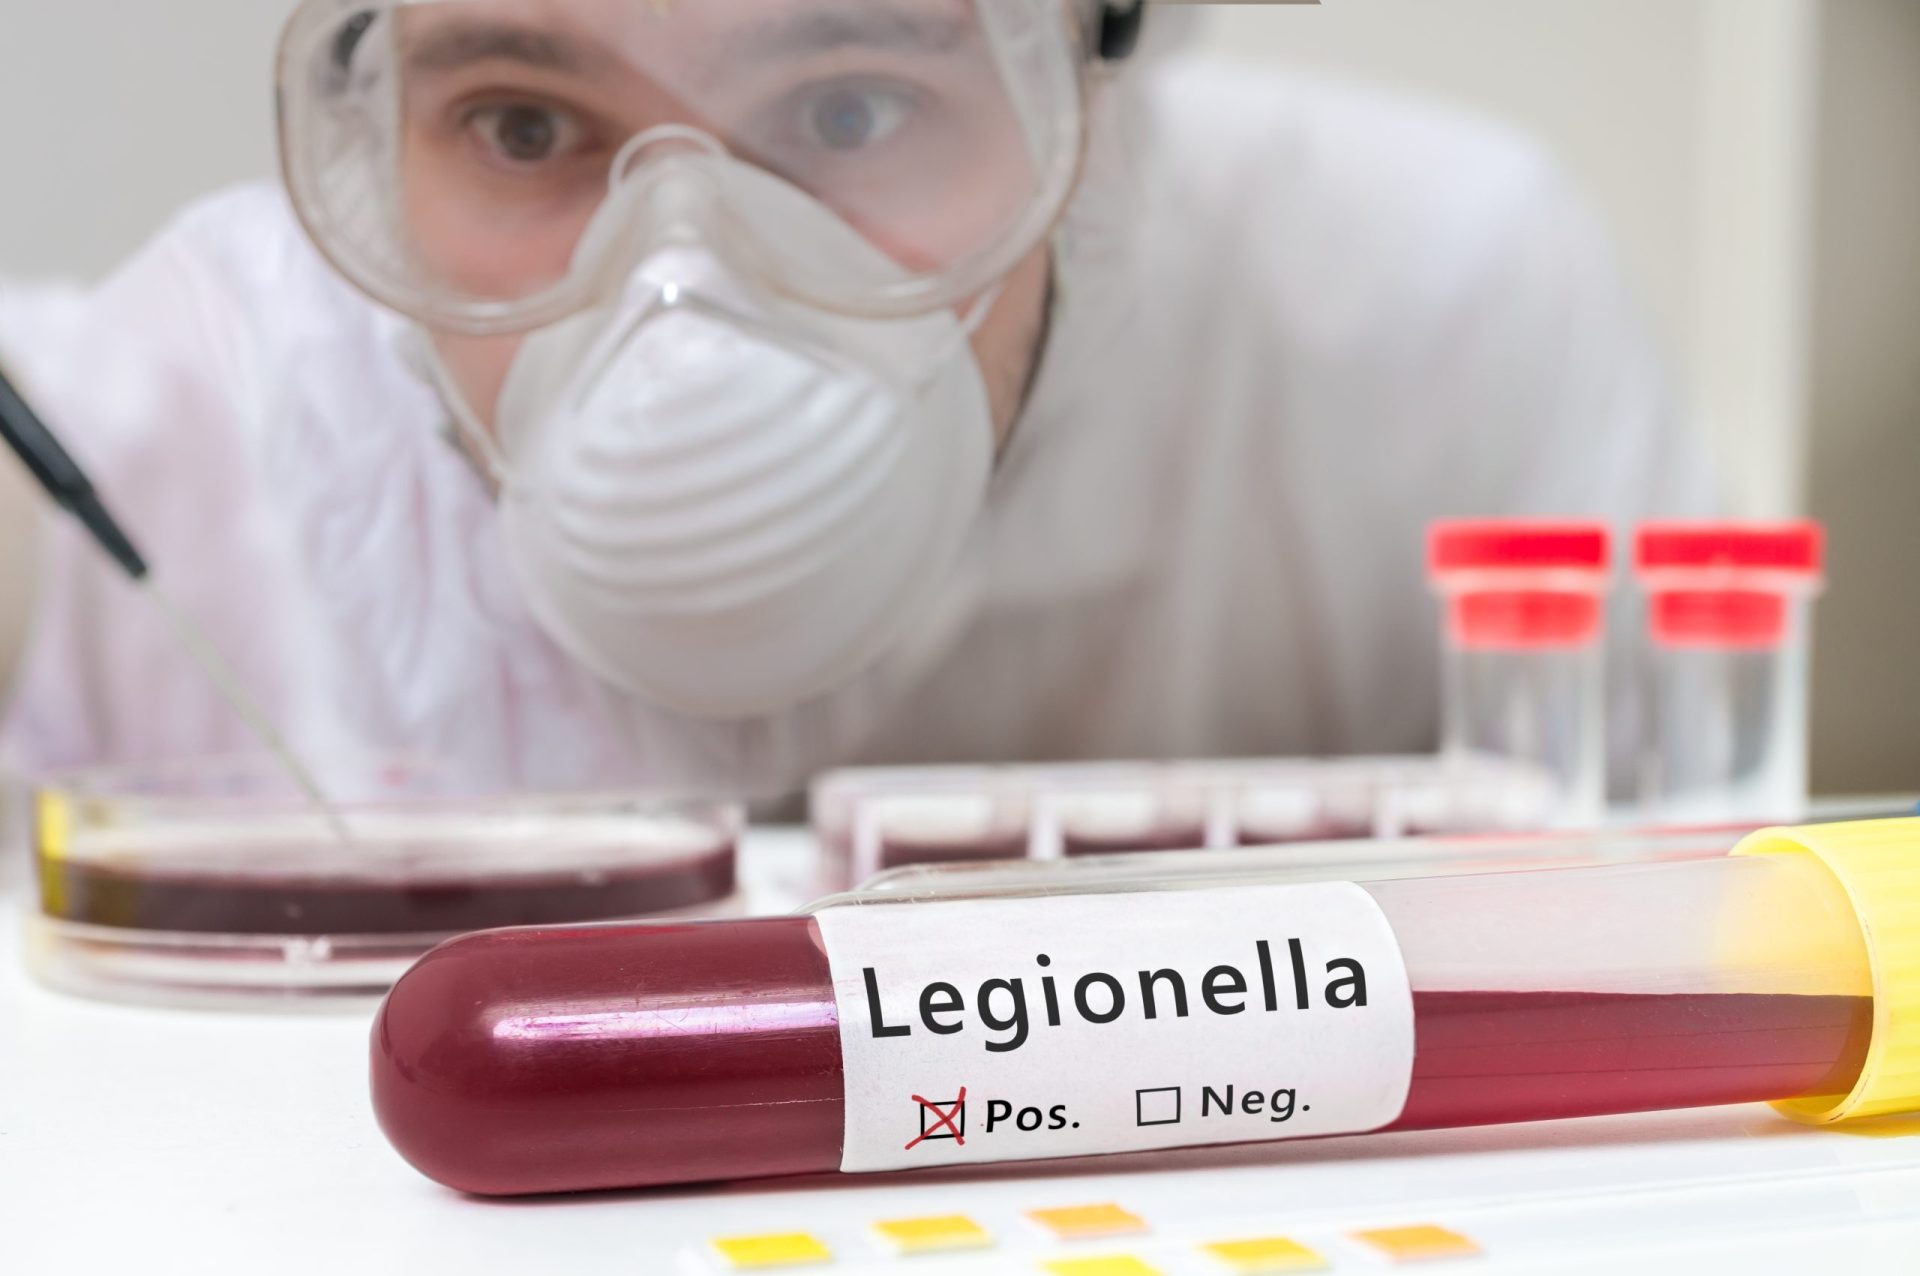 24 pessoas infetadas com legionella